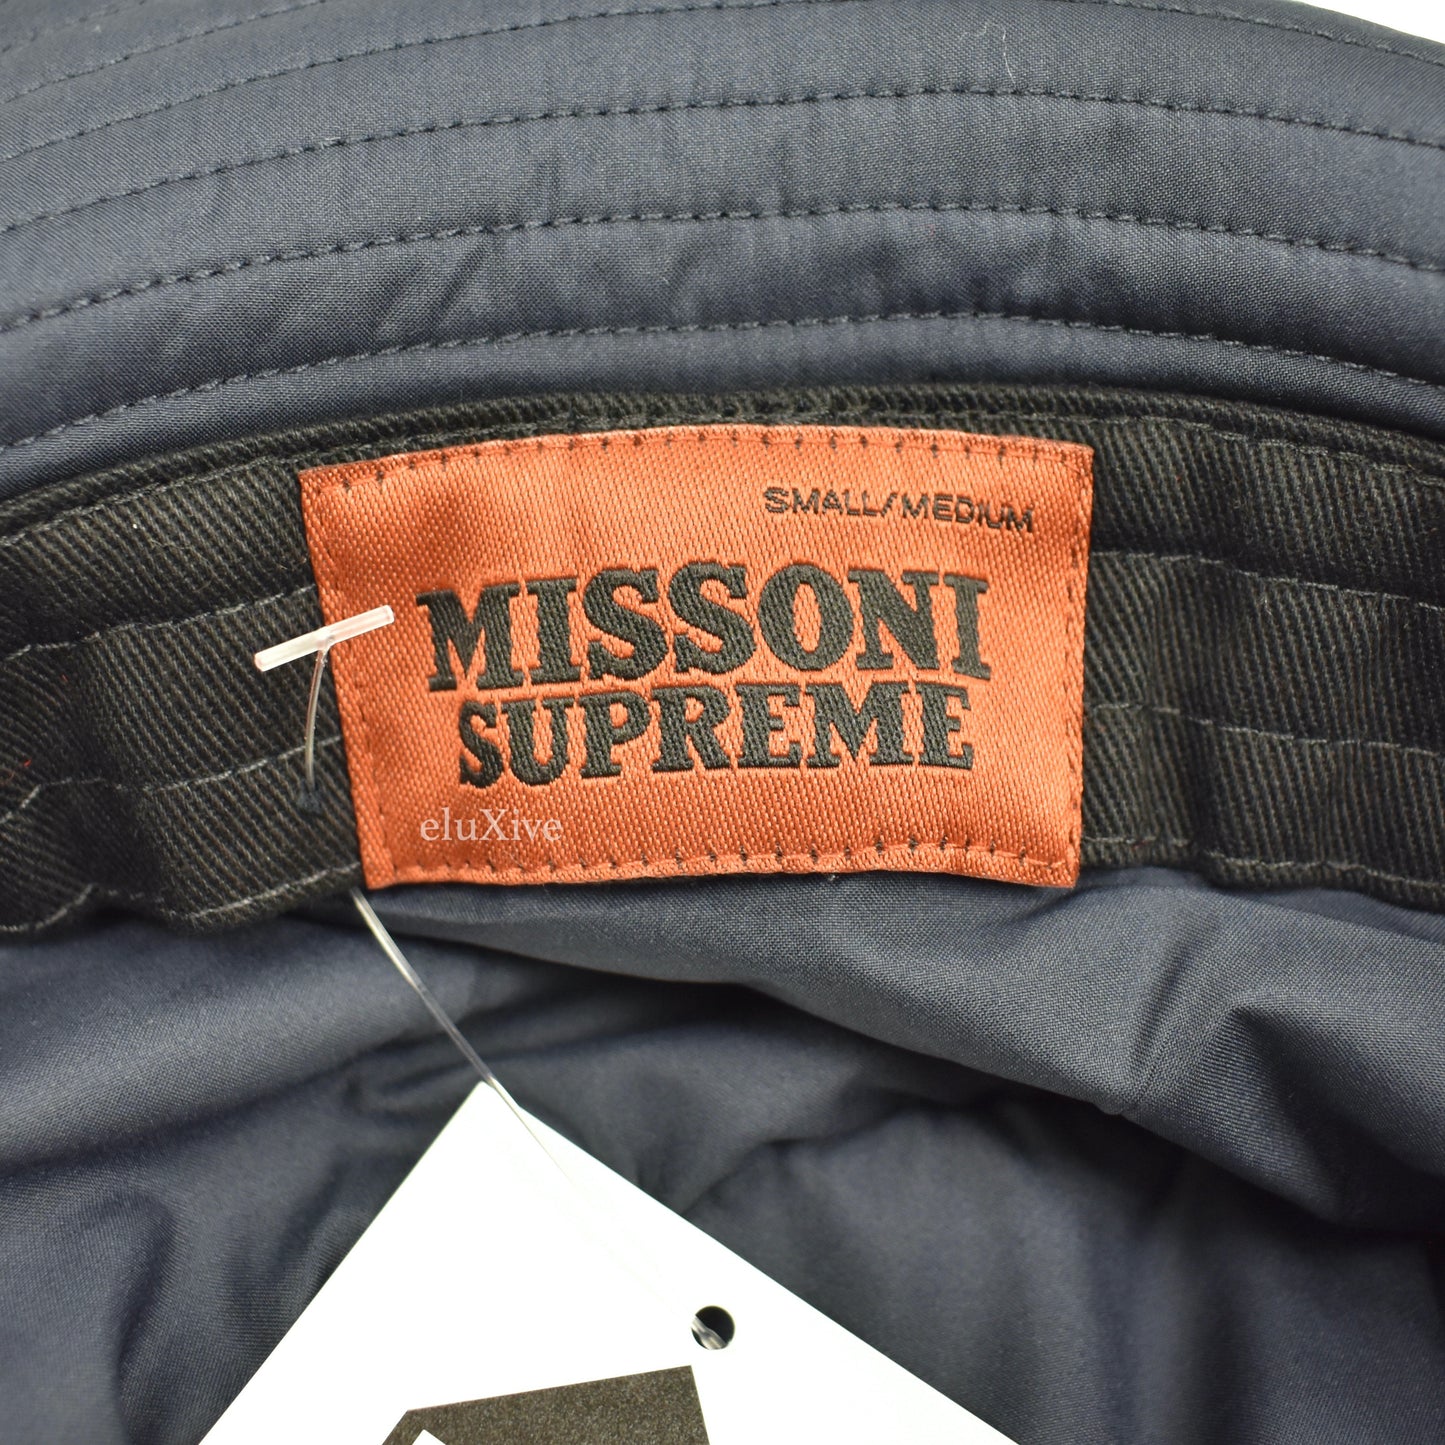 Supreme x Missoni - Multicolor Knit Logo Bucket Hat